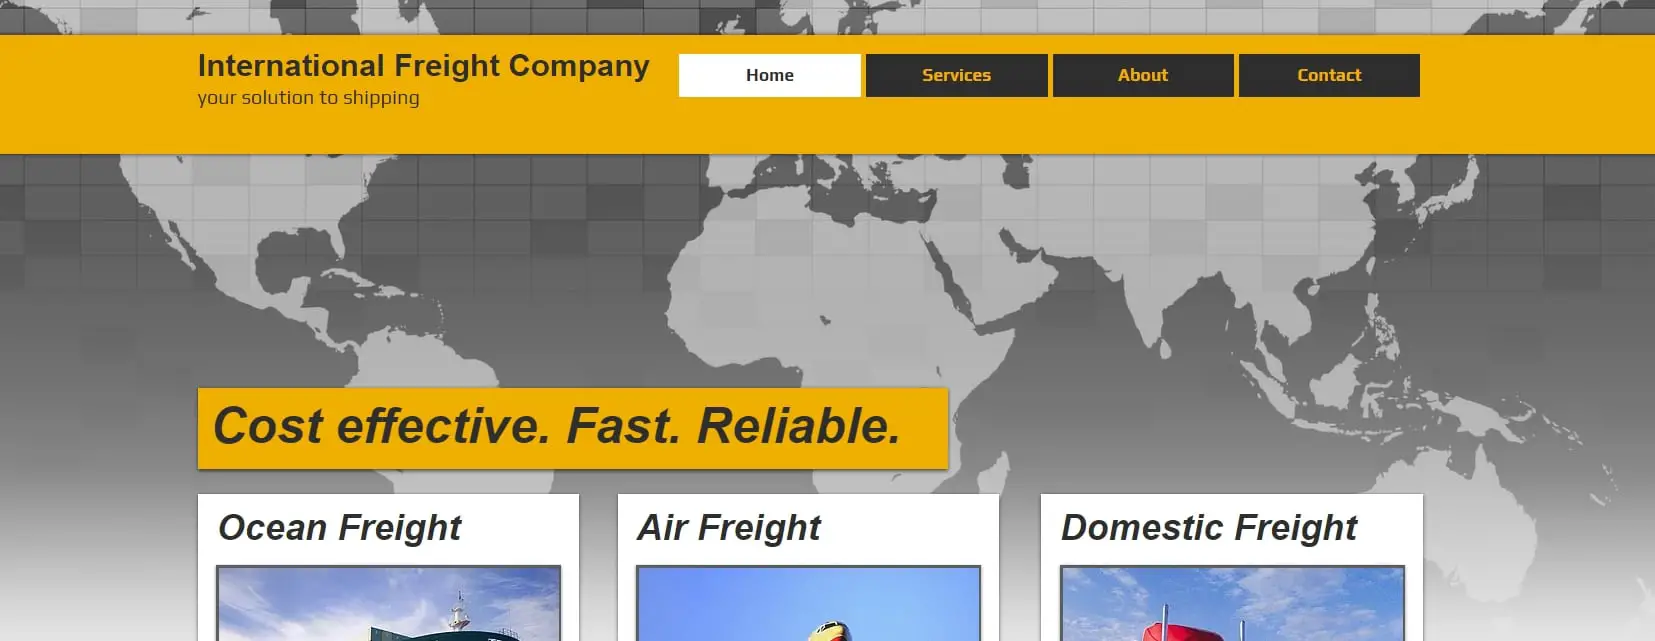 International Freight Website Template